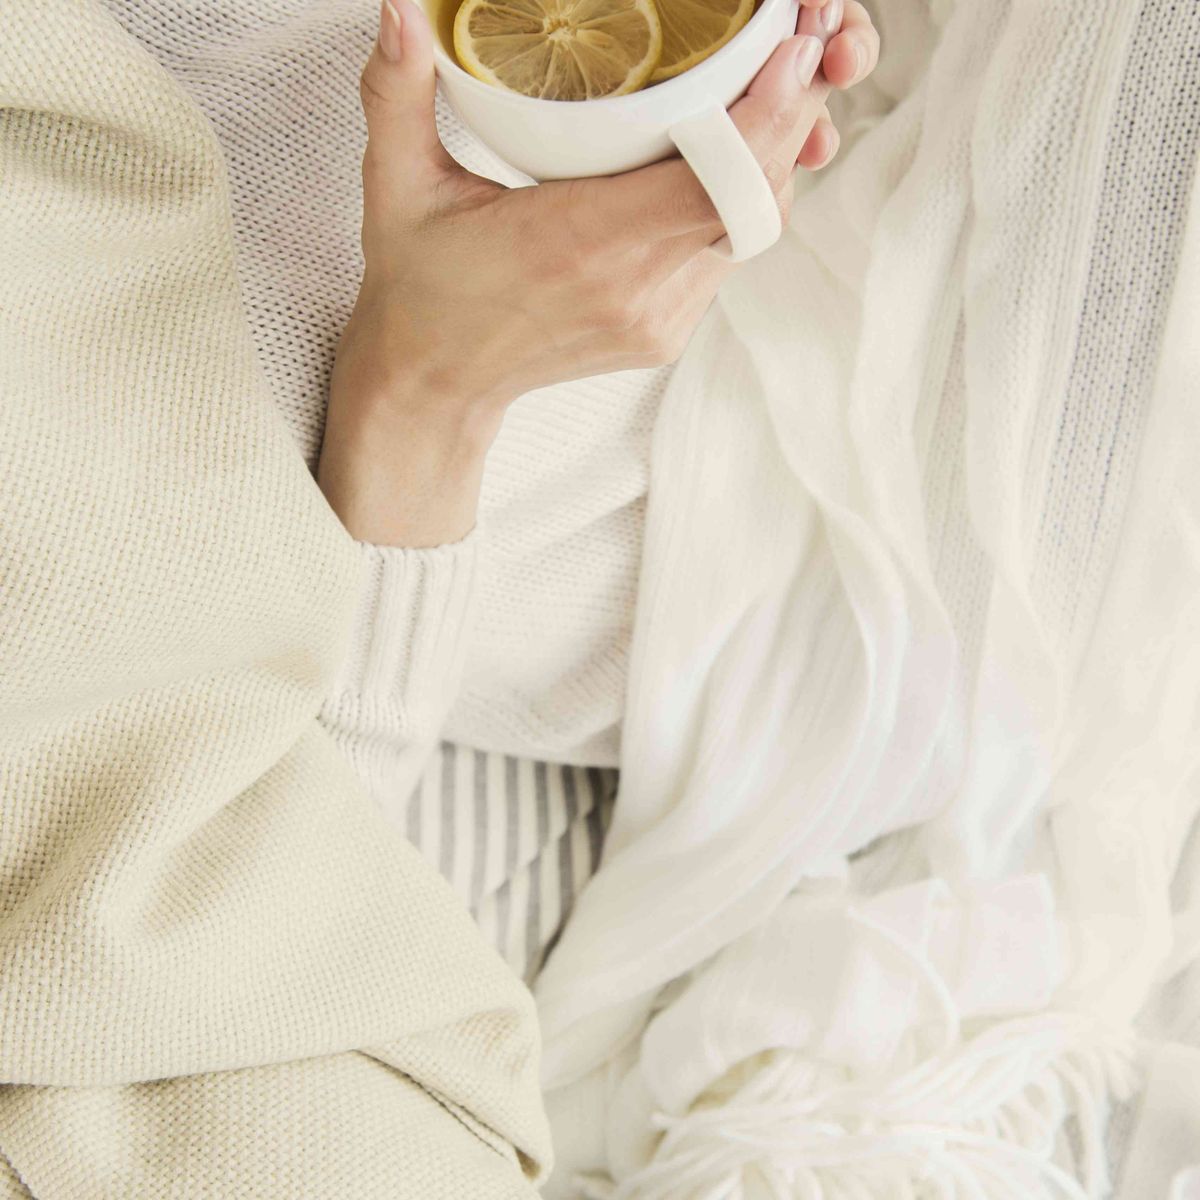 Sort kvinde, der drikker kop te med citron